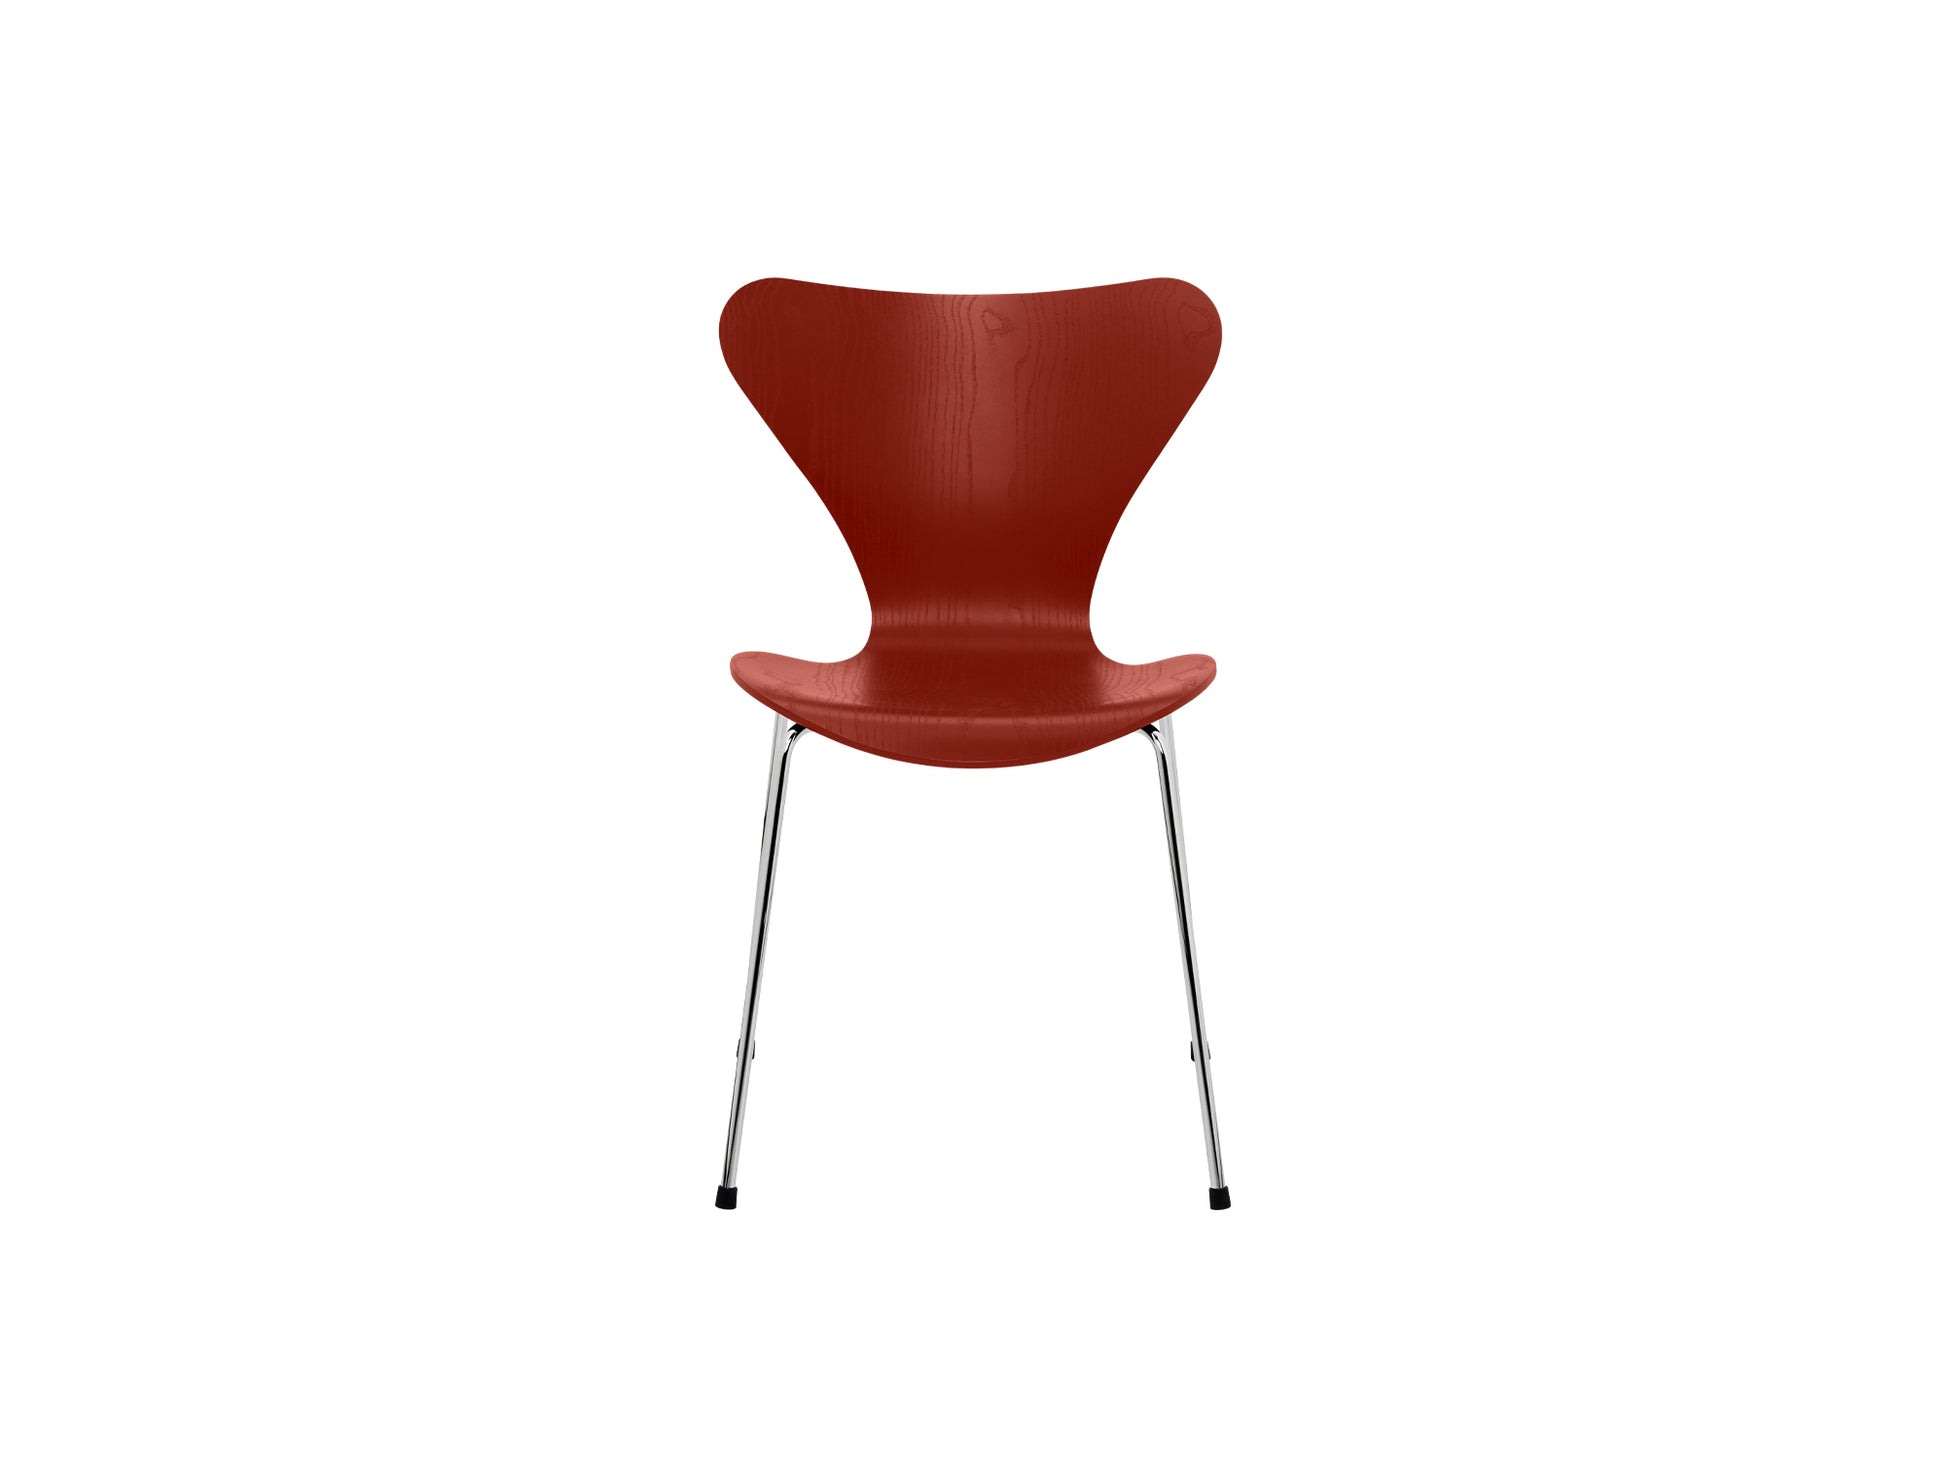 Series 7™ 3107 Dining Chair by Fritz Hansen - Venetian Red Coloured Ash Veneer Shell  / Chromed Steel